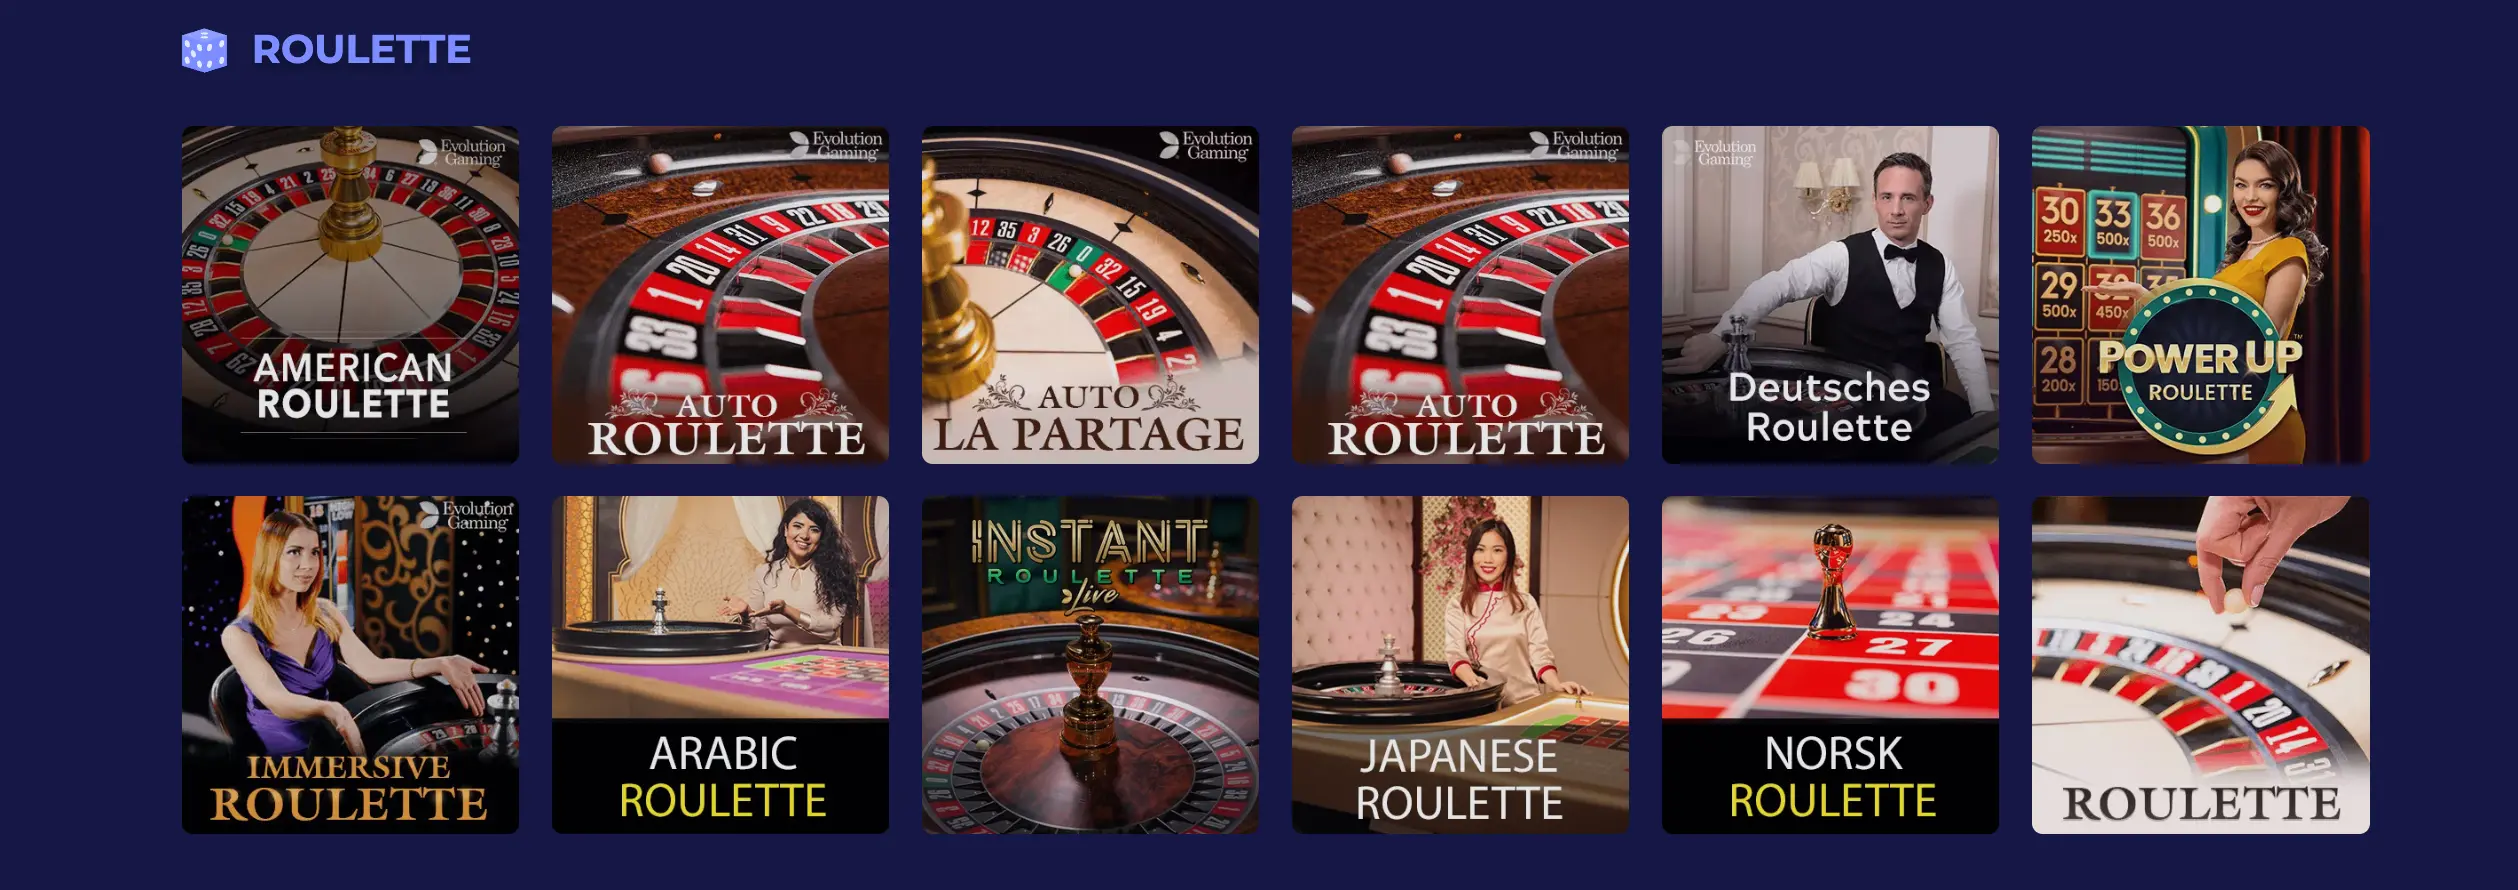 Roulette im Pino Casino